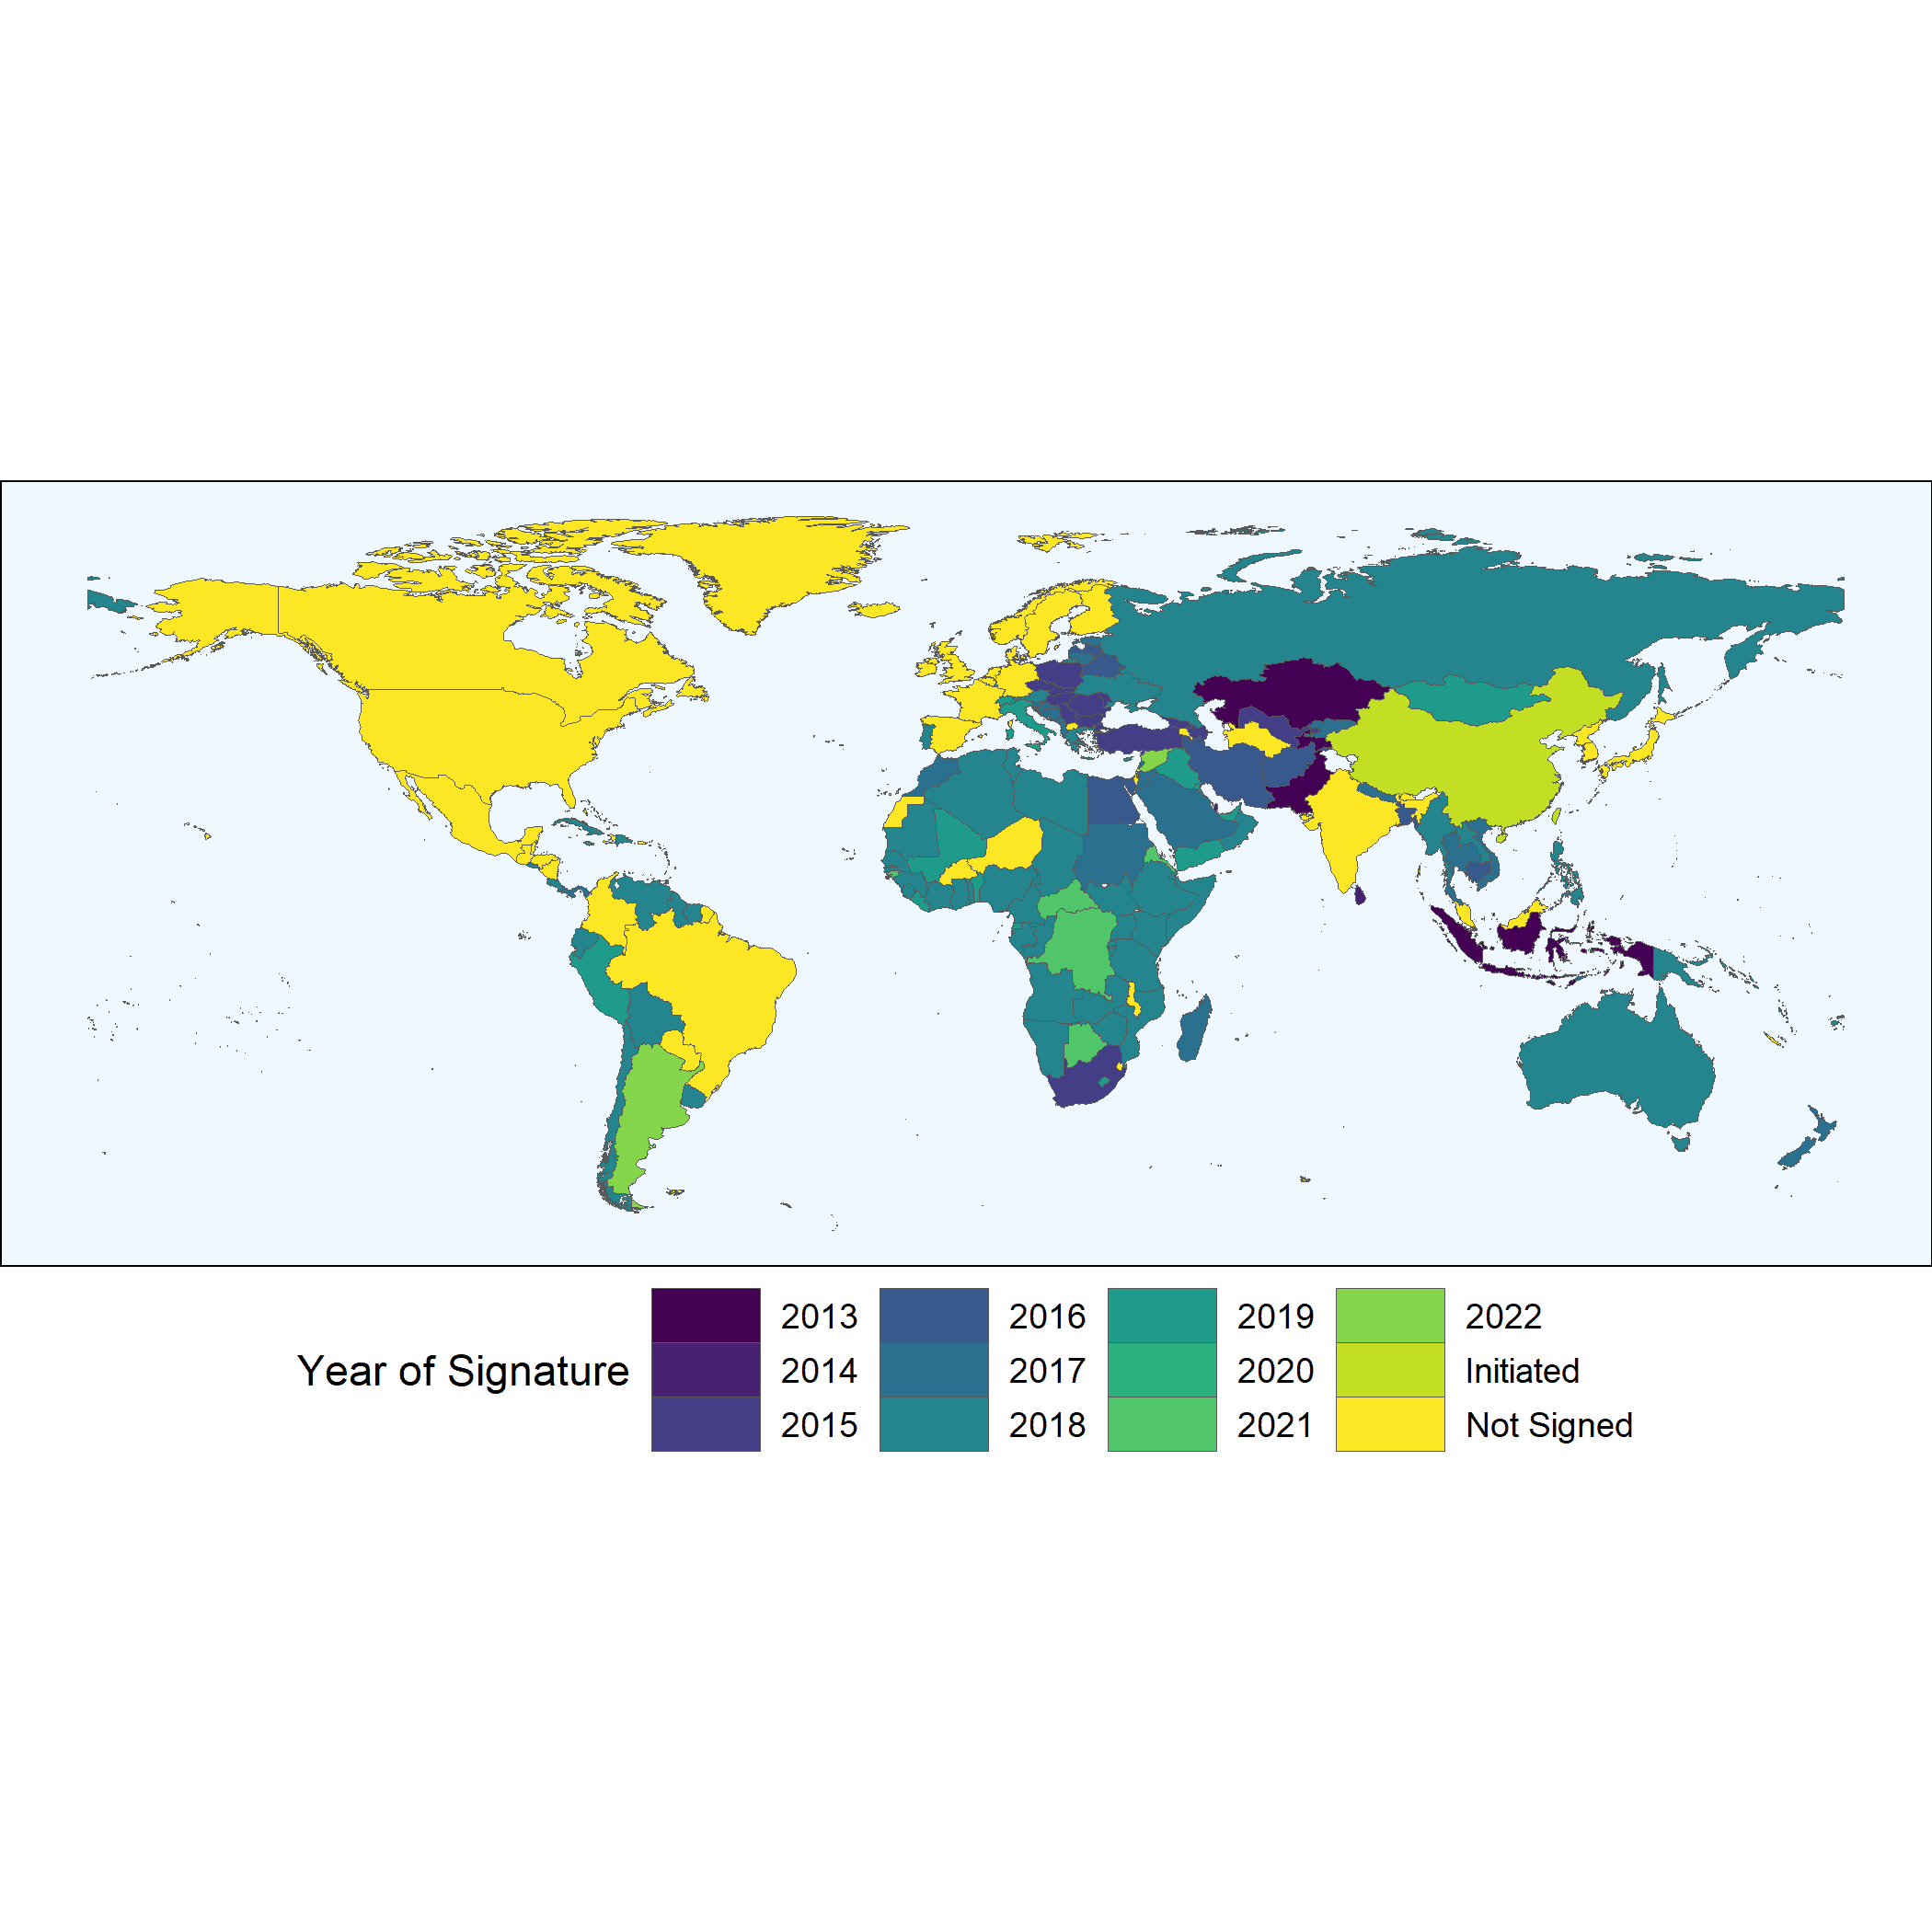 Global membership in the BRI